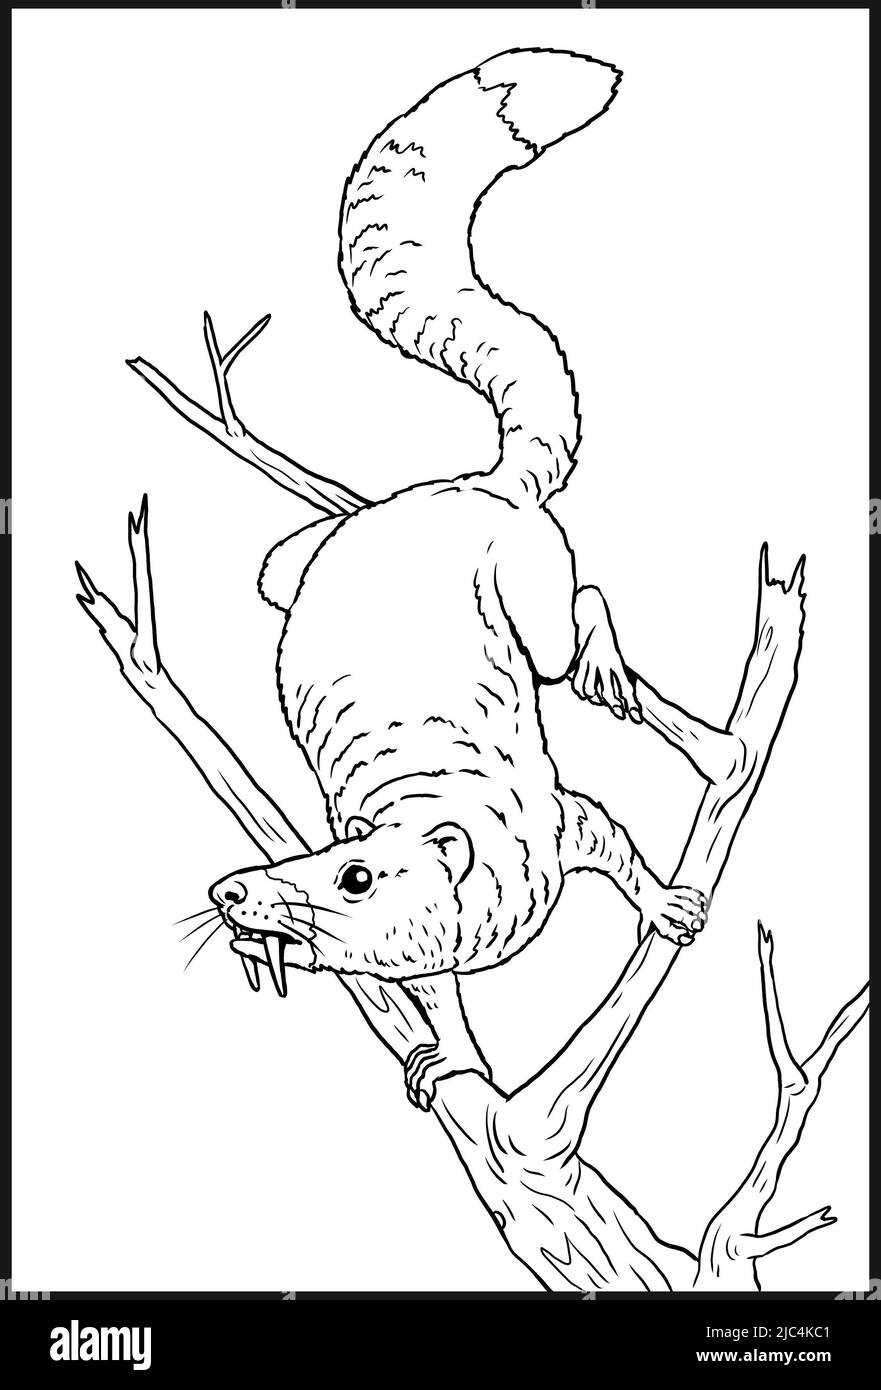 Animaux préhistoriques - écureuil saboté. Dessin avec des mammifères éteints. Dessin de silhouette pour livre de coloriage. Banque D'Images